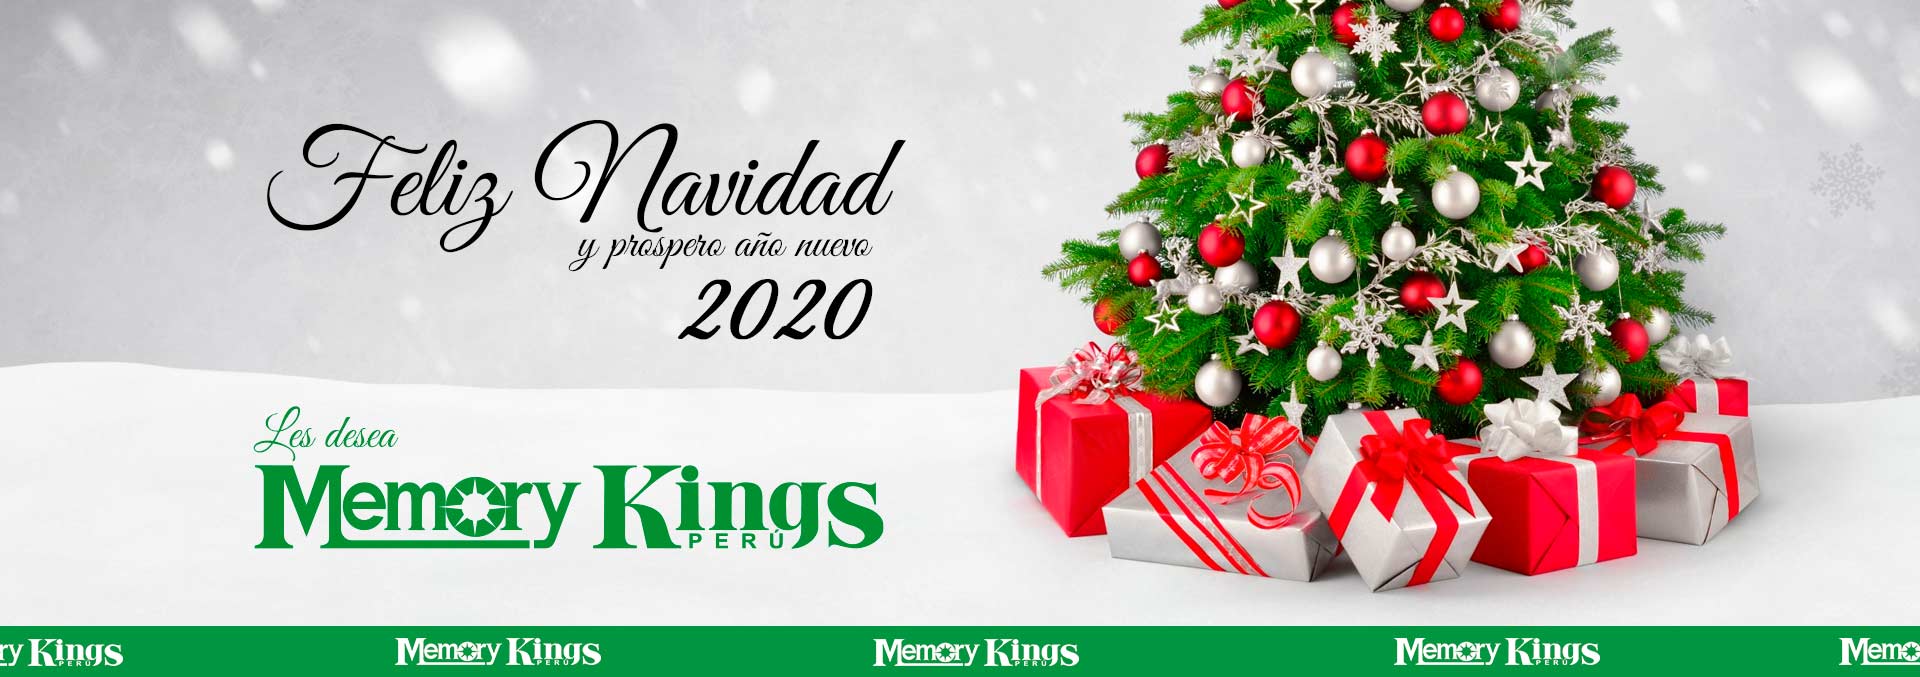 FELIZ NAVIDAD Y PROSPERO AÑO NUEVO 2020 LES DESEA MEMORY KINGS